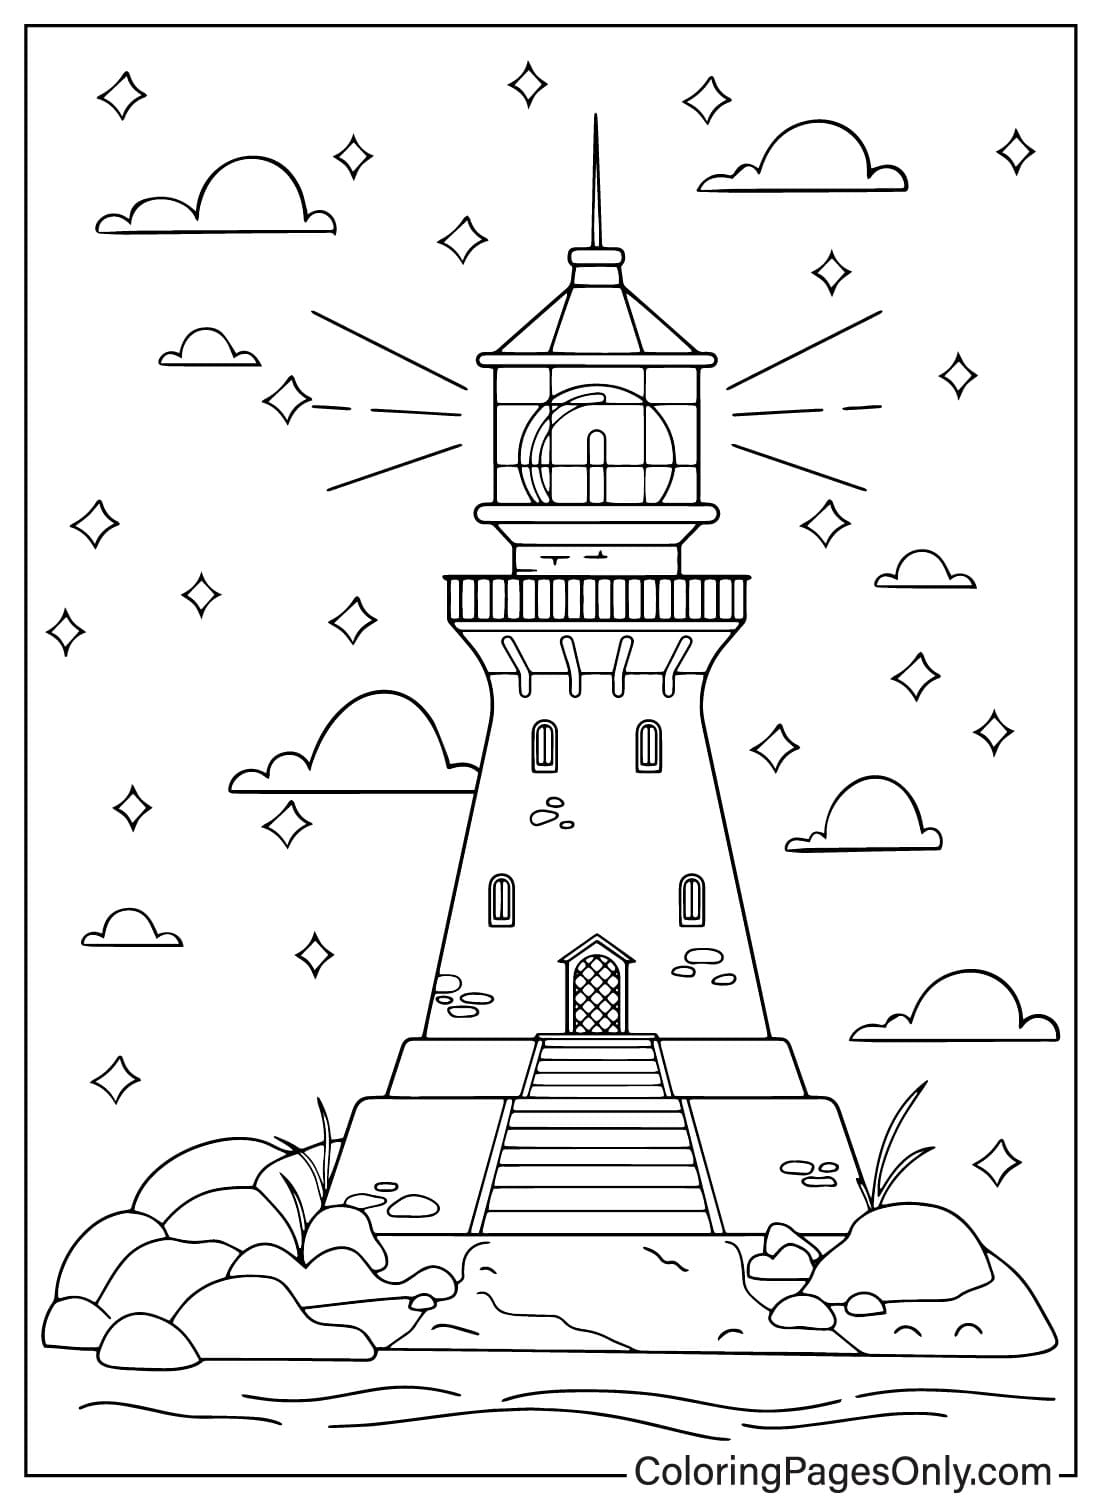 Vuurtoren op een sterrennacht kleurplaat voor kinderen van Lighthouse